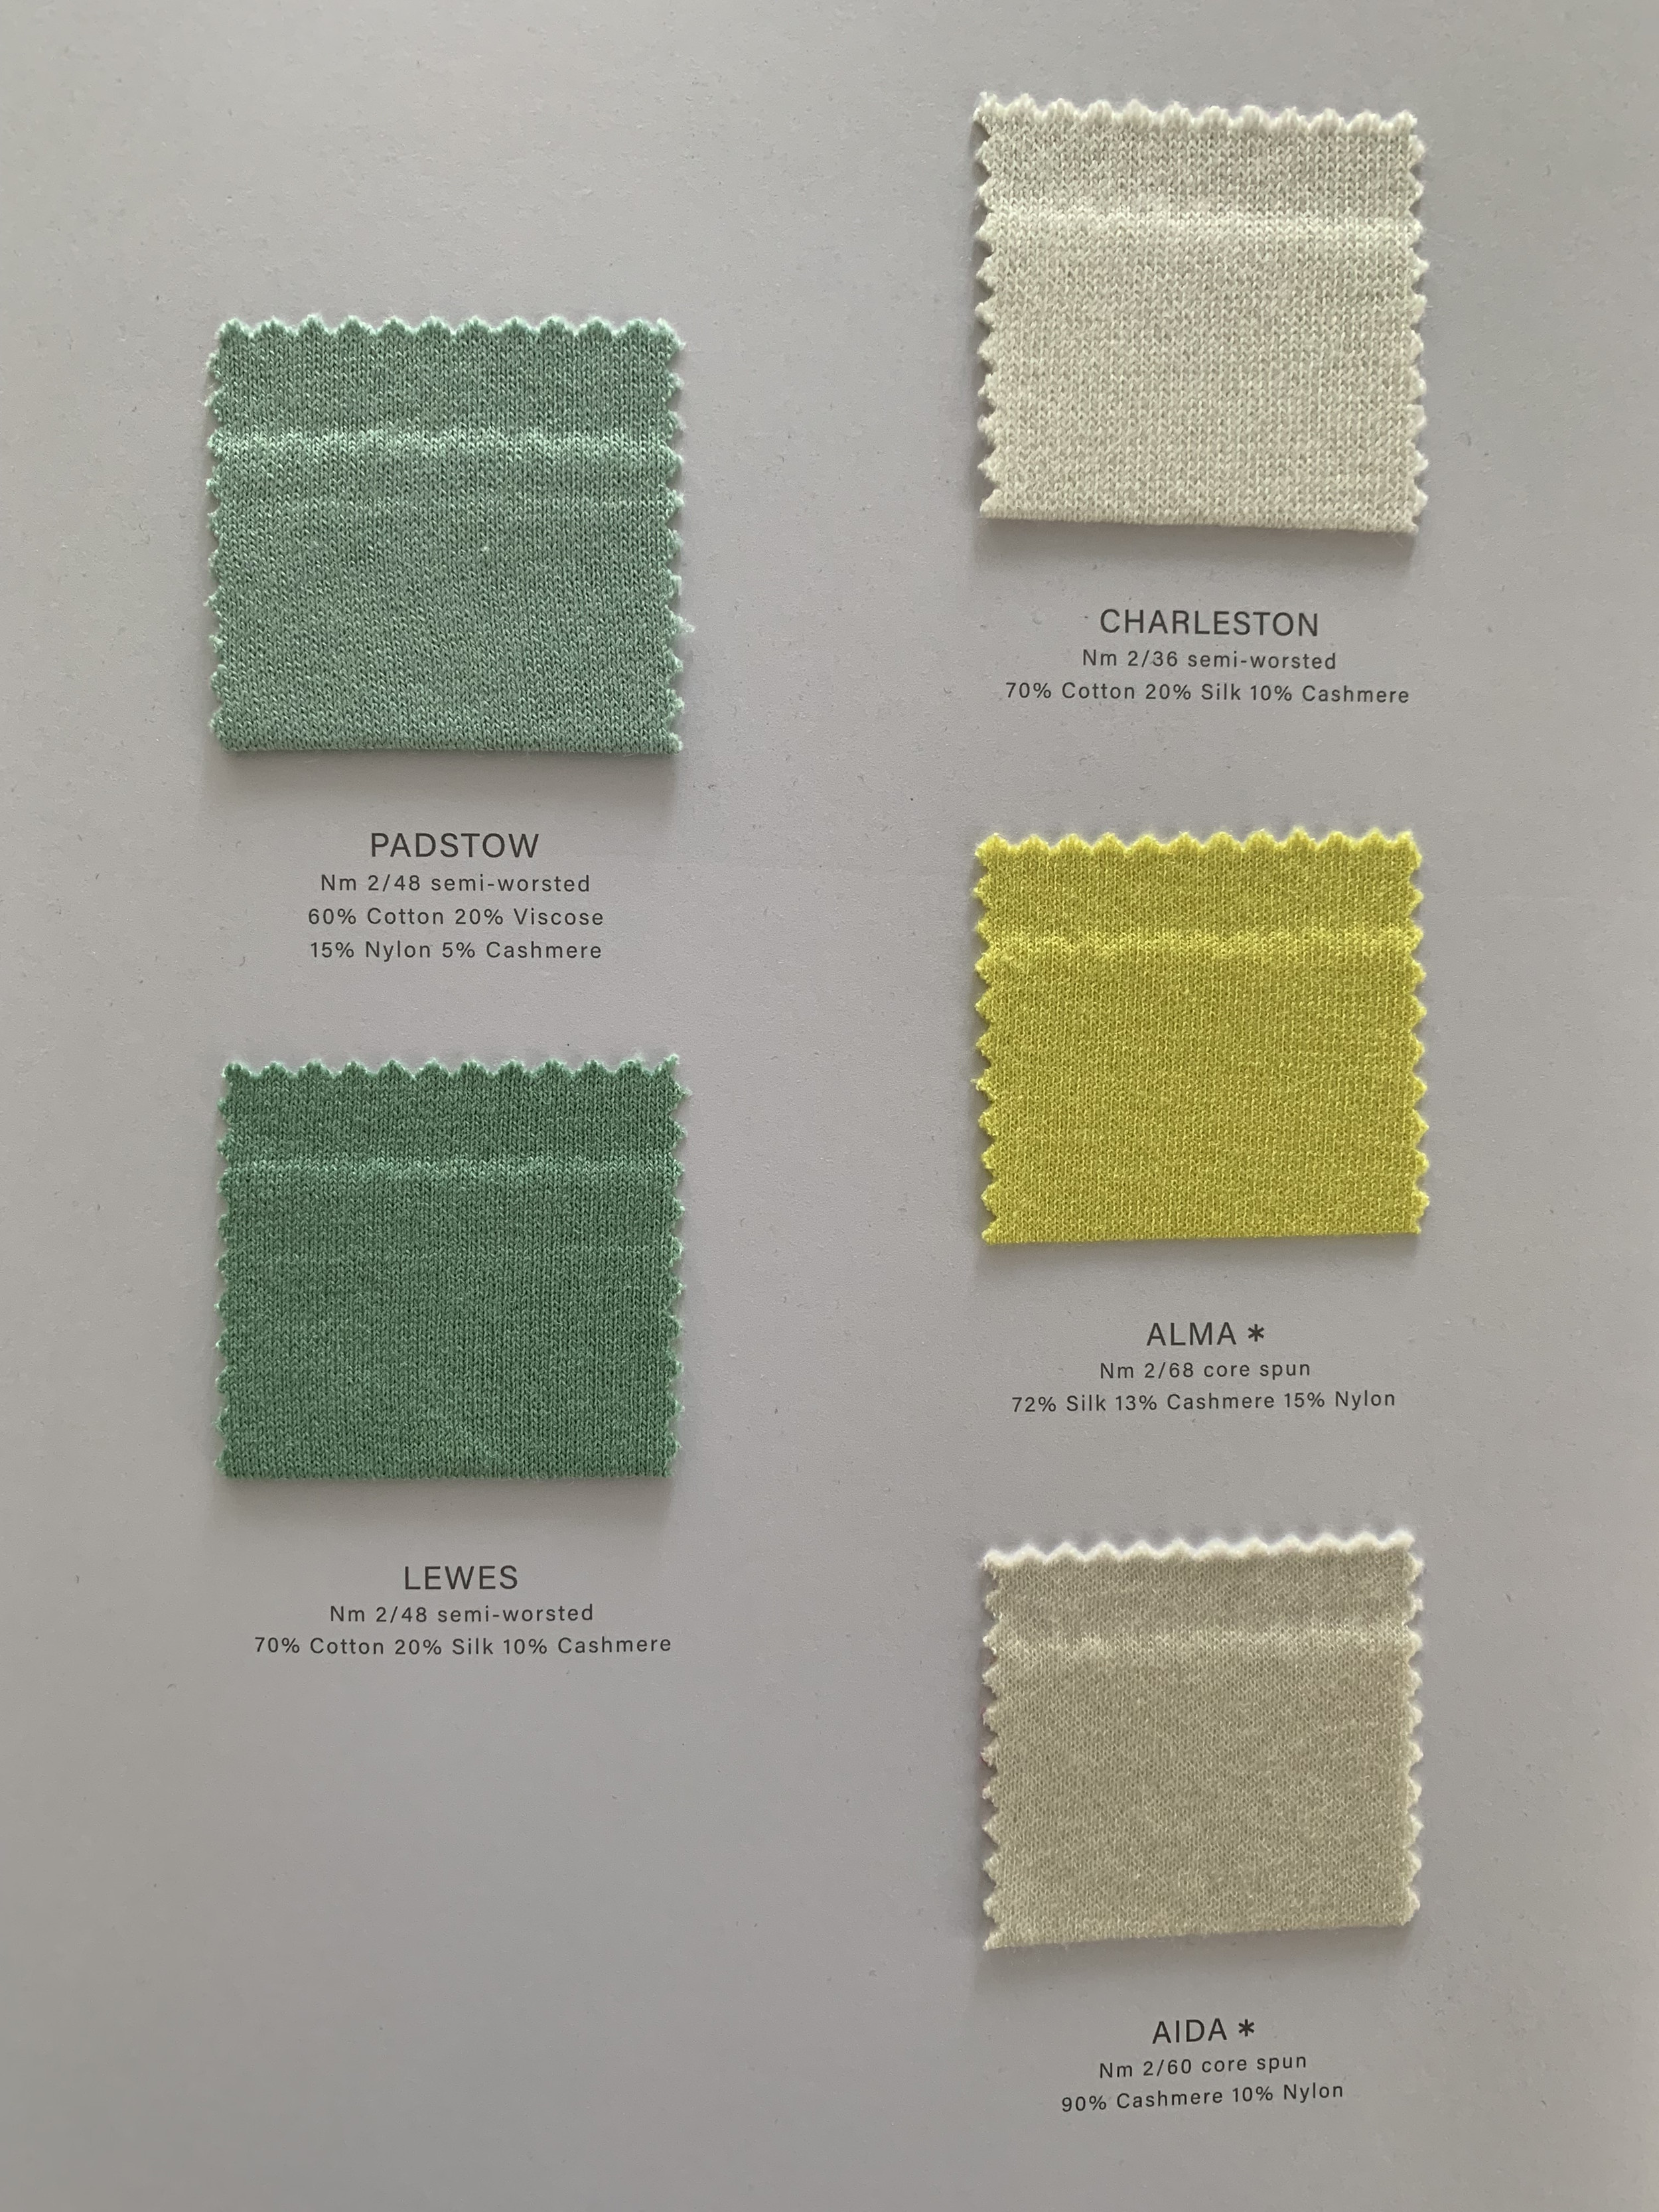 Ewsca spring cashmere combina tarjetas de colores con todos los materiales